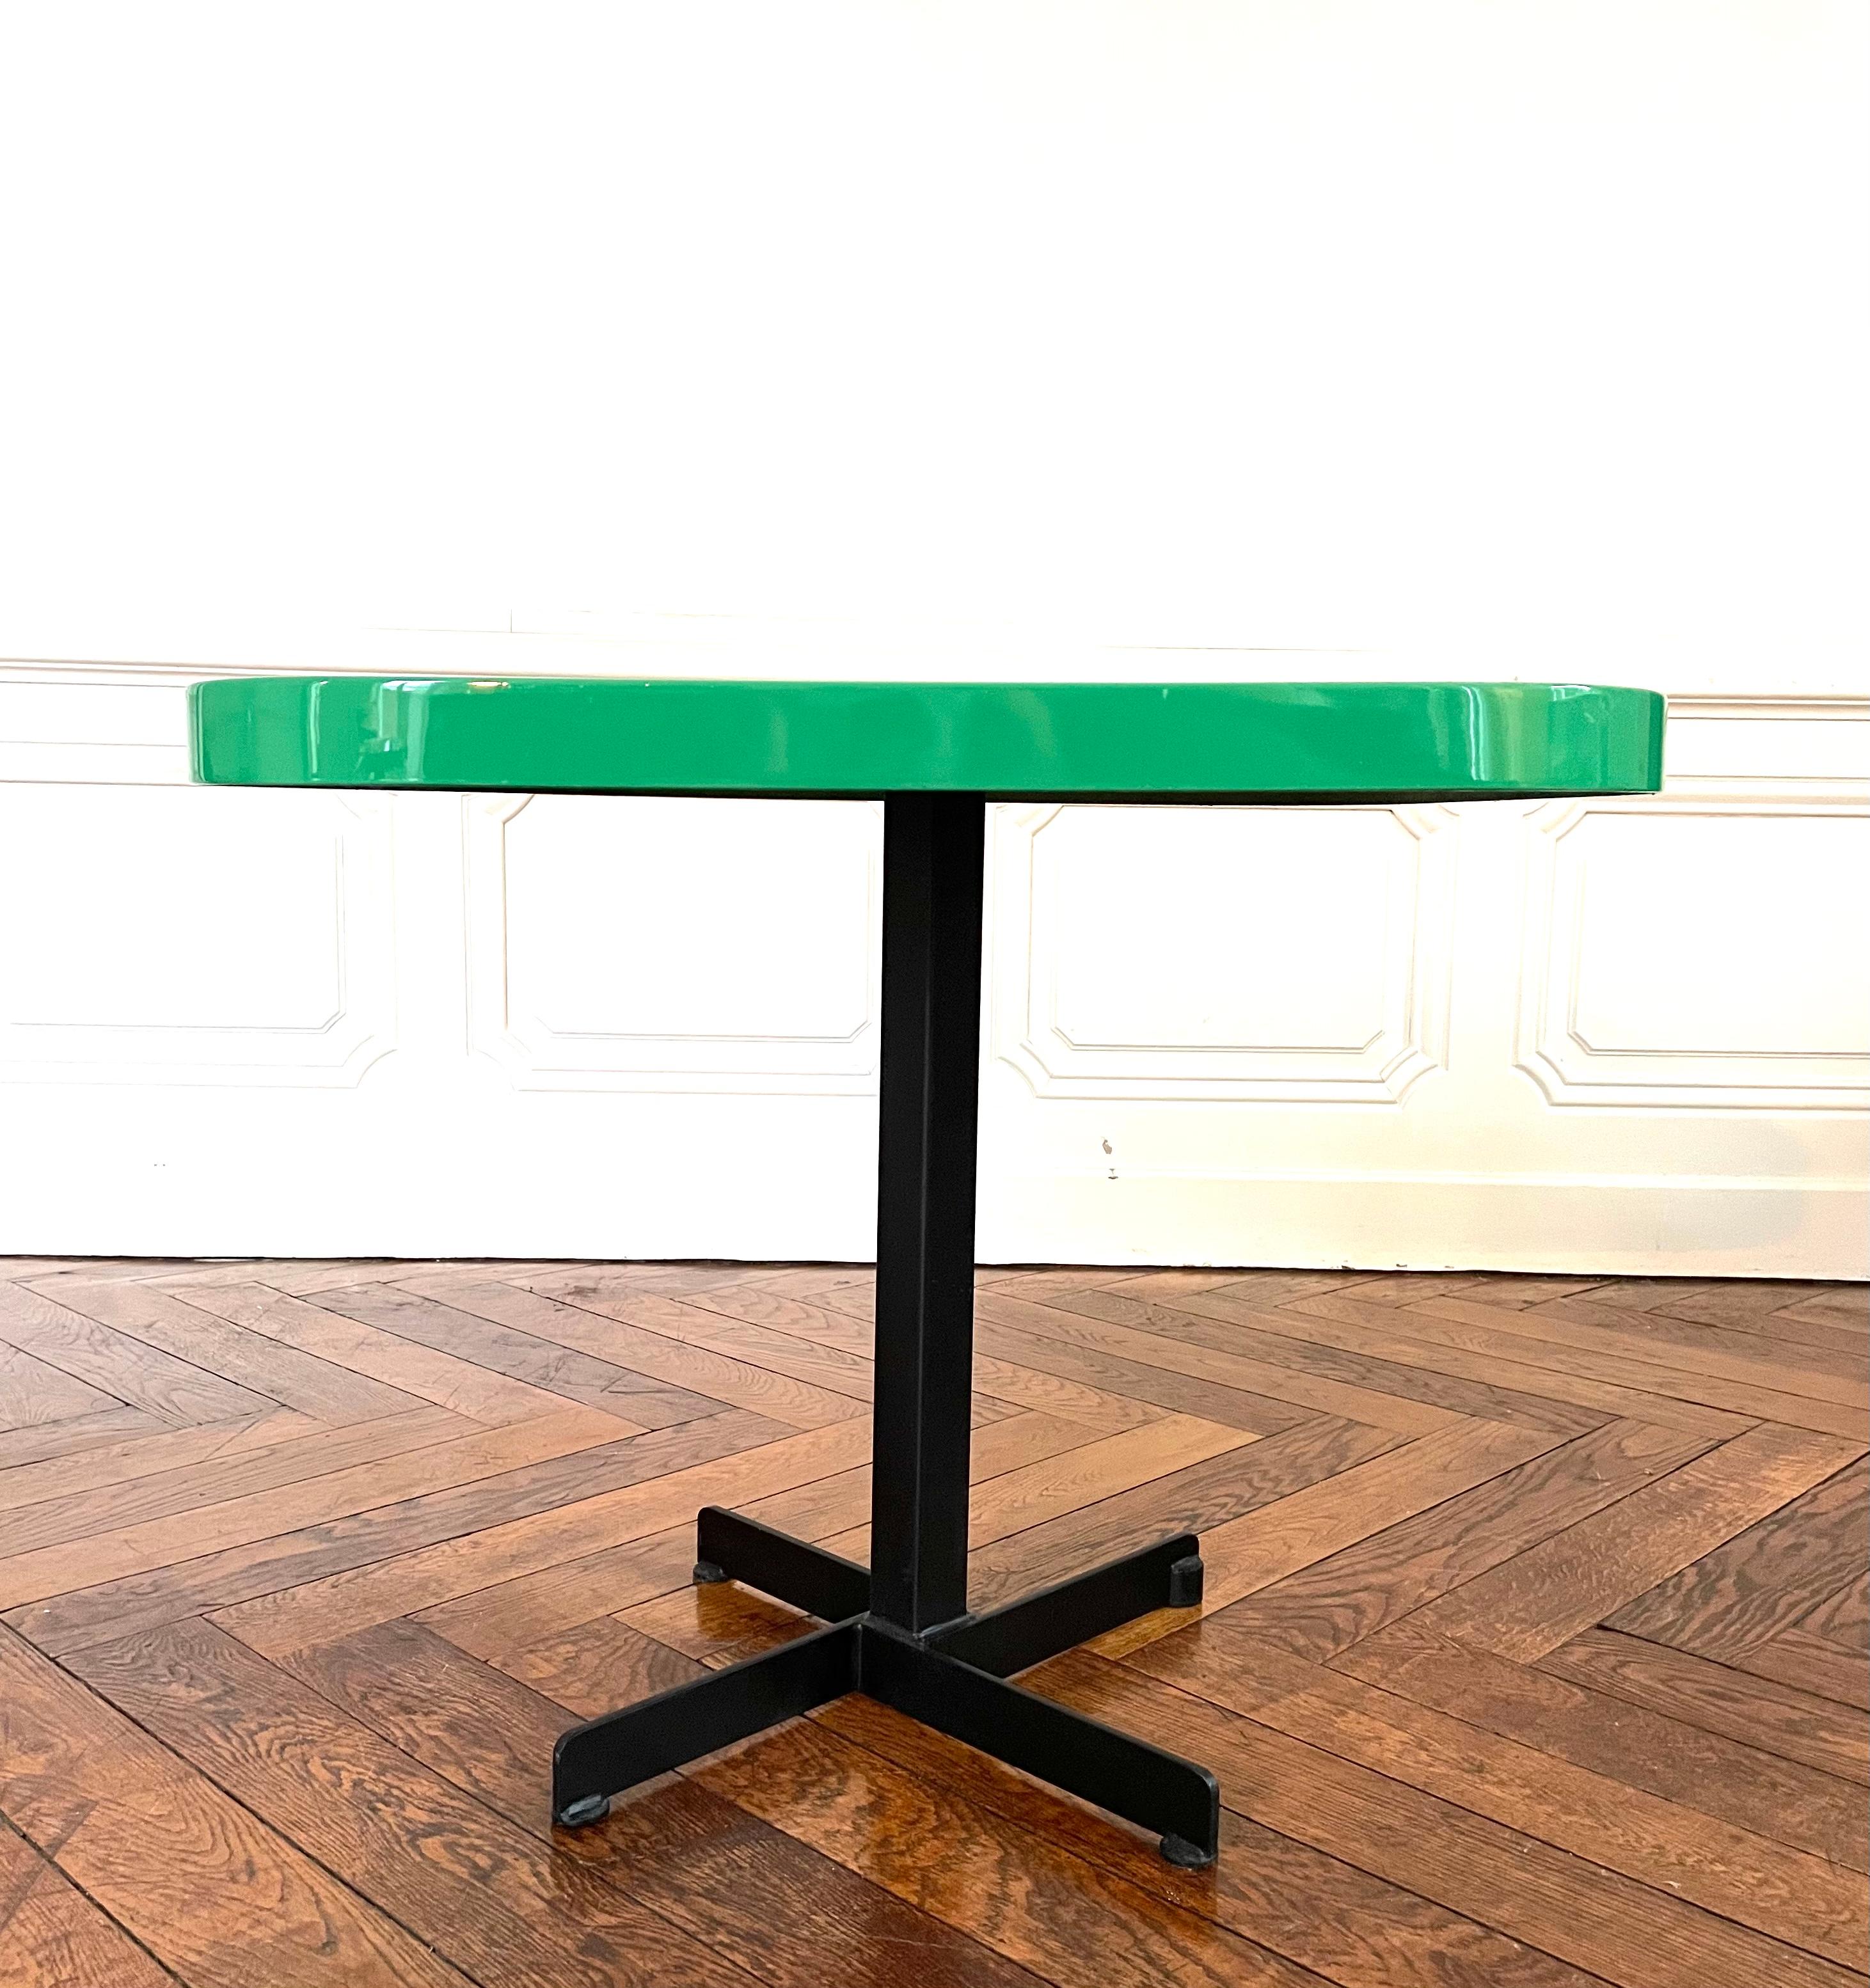 Table carrée Charlotte Perriand en polyester vert De 1984. Modèle de table conçu pour les duplex de Mirantins Arcs 1800. Plateau carré en polyester vert en parfait état, ayant été restauré dans les règles de l'art. Table à piètement fixe cruciforme